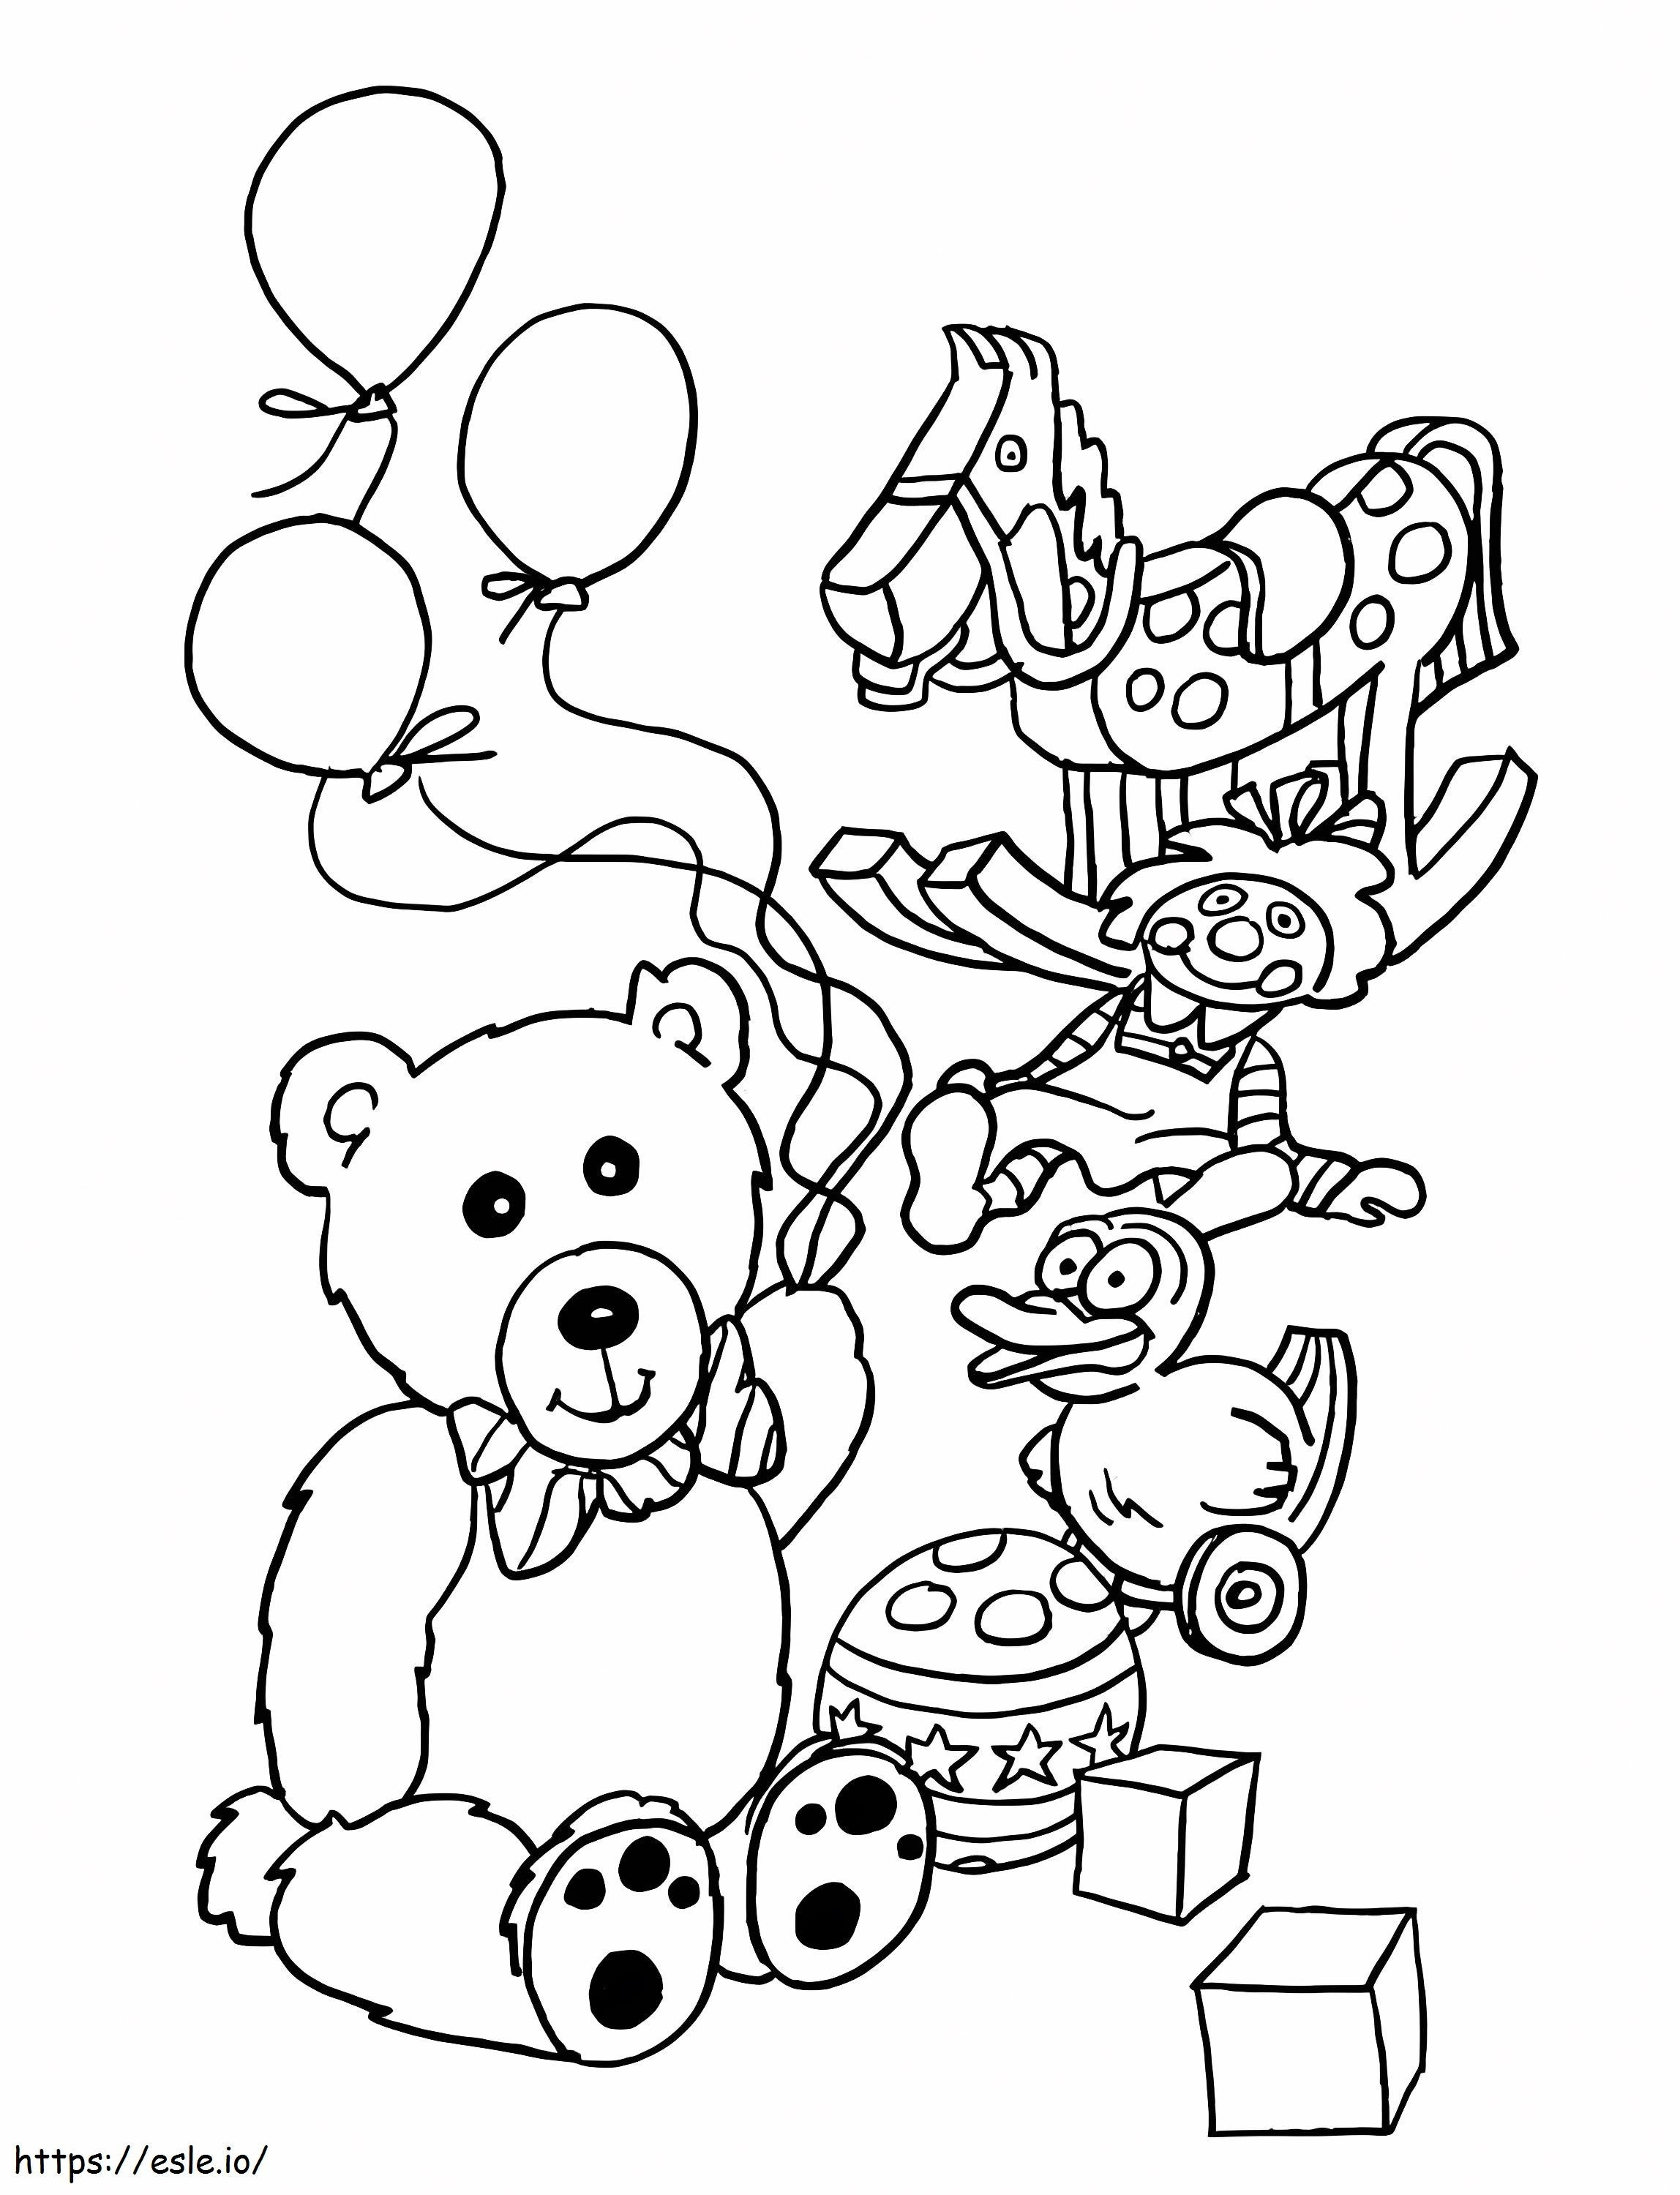 Teddybär und Spielzeug ausmalbilder